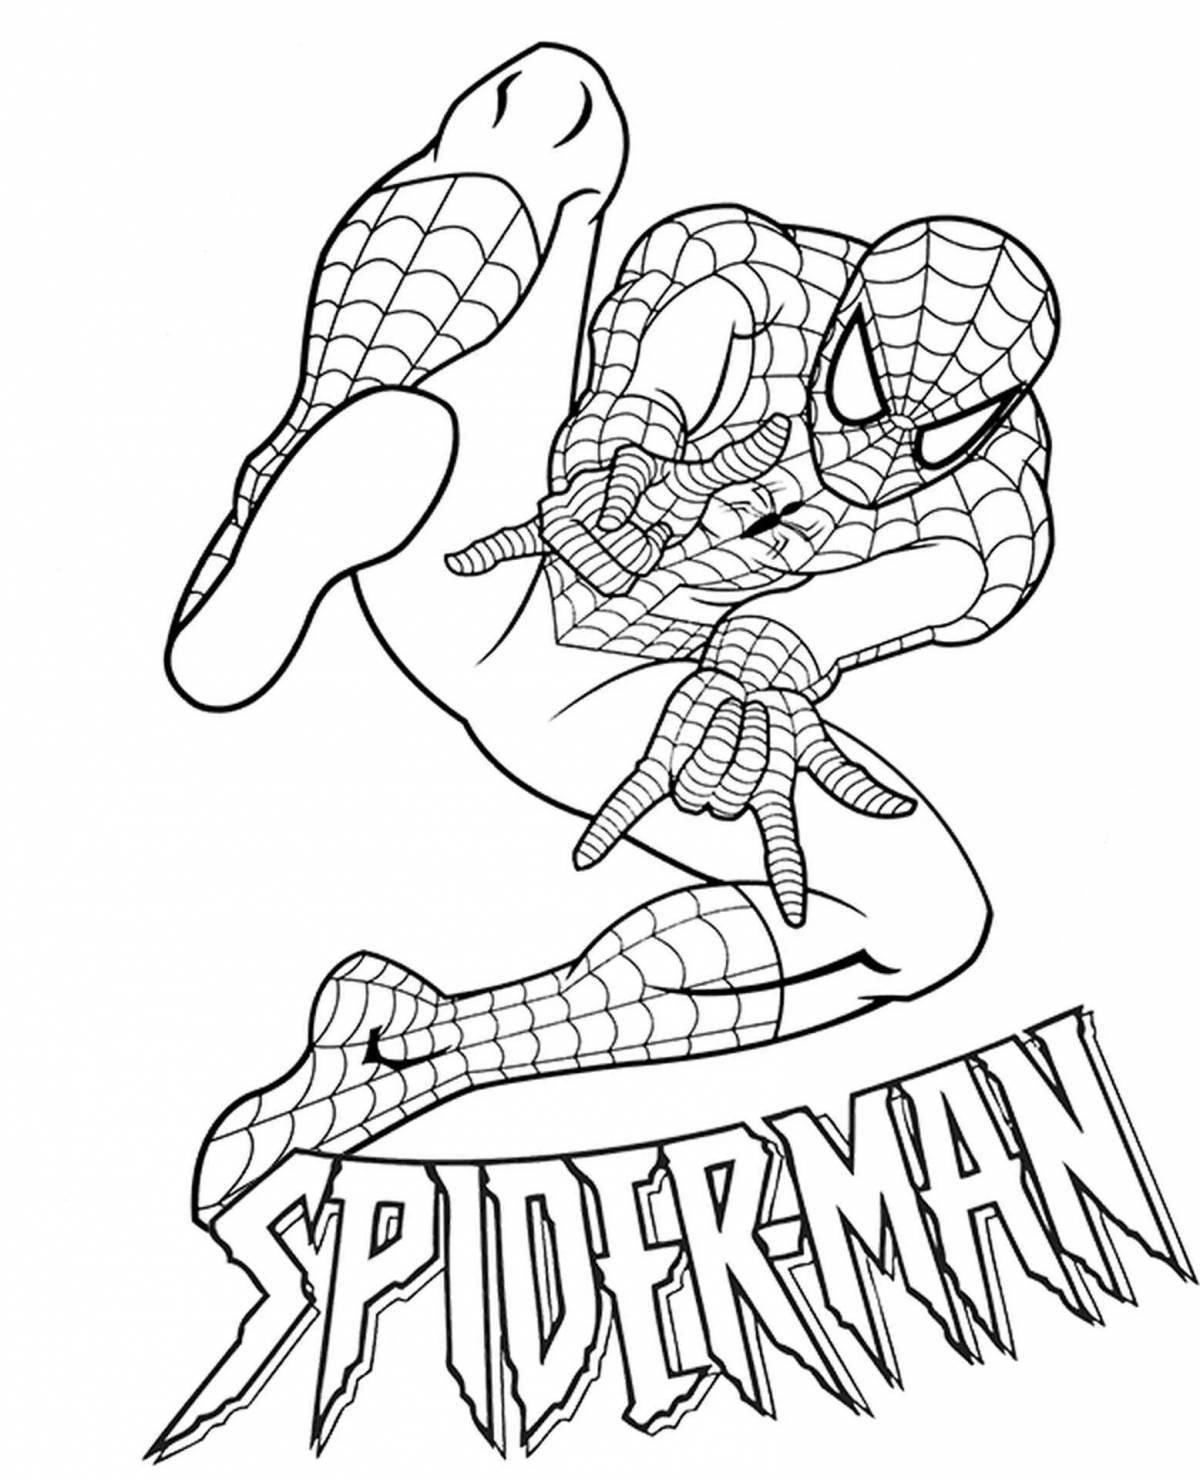 Turn on spiderman #7